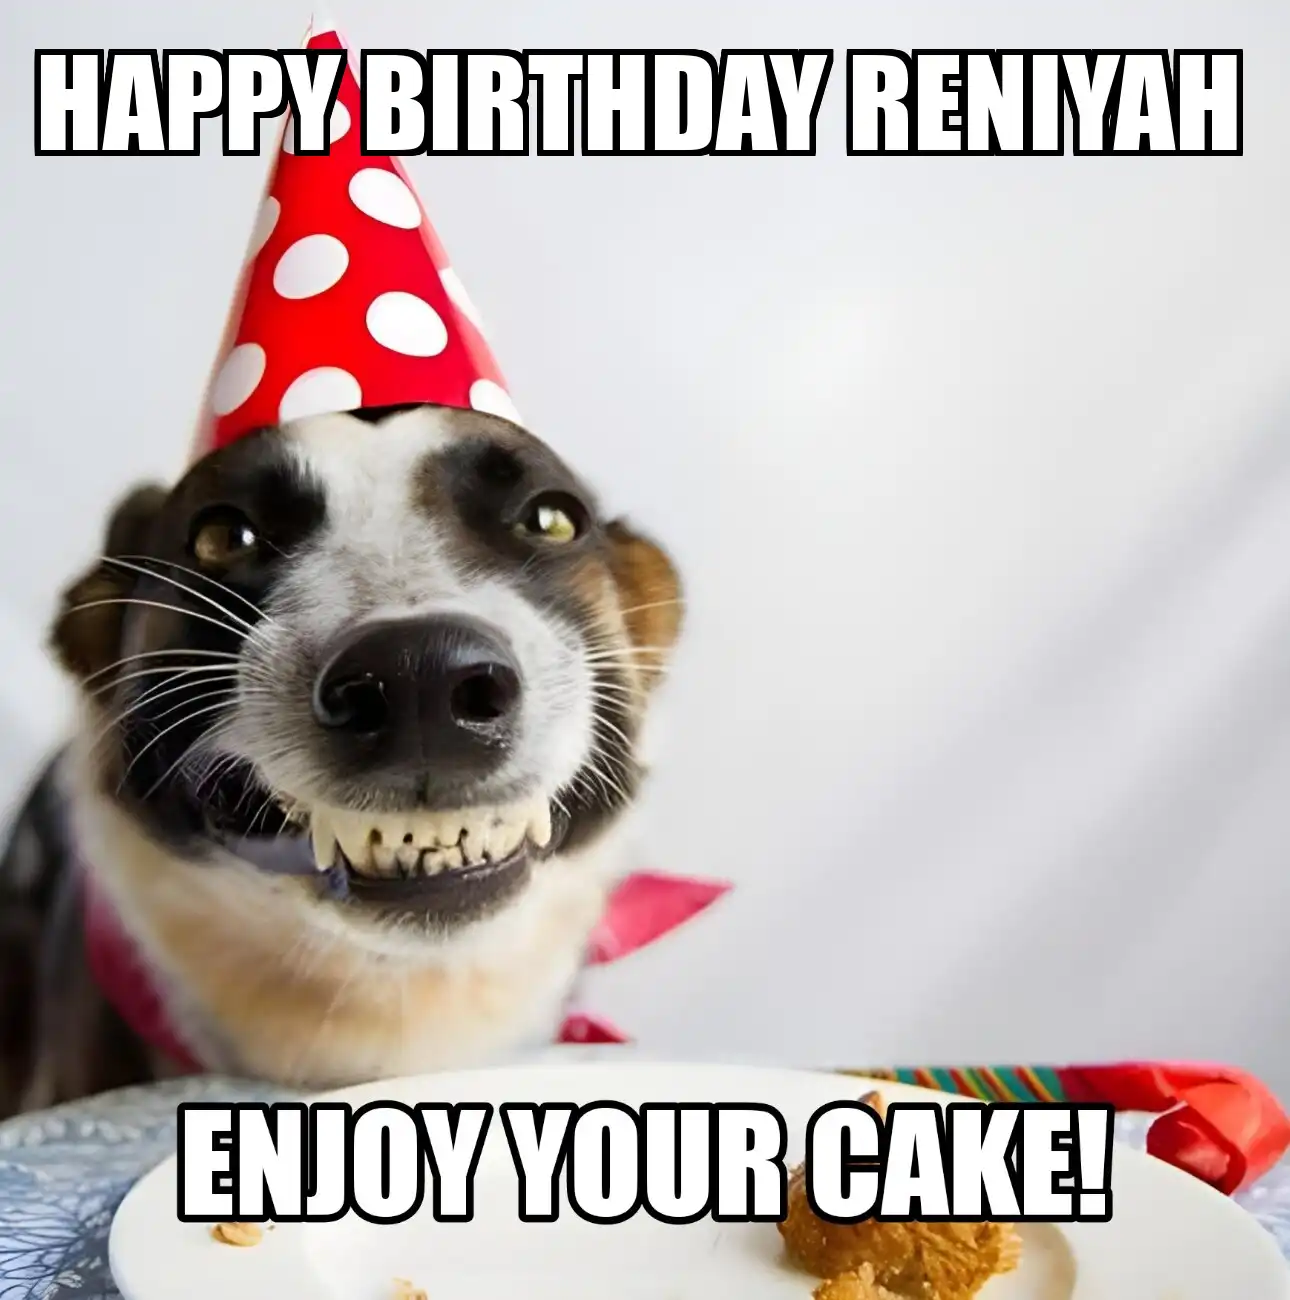 Happy Birthday Reniyah Enjoy Your Cake Dog Meme